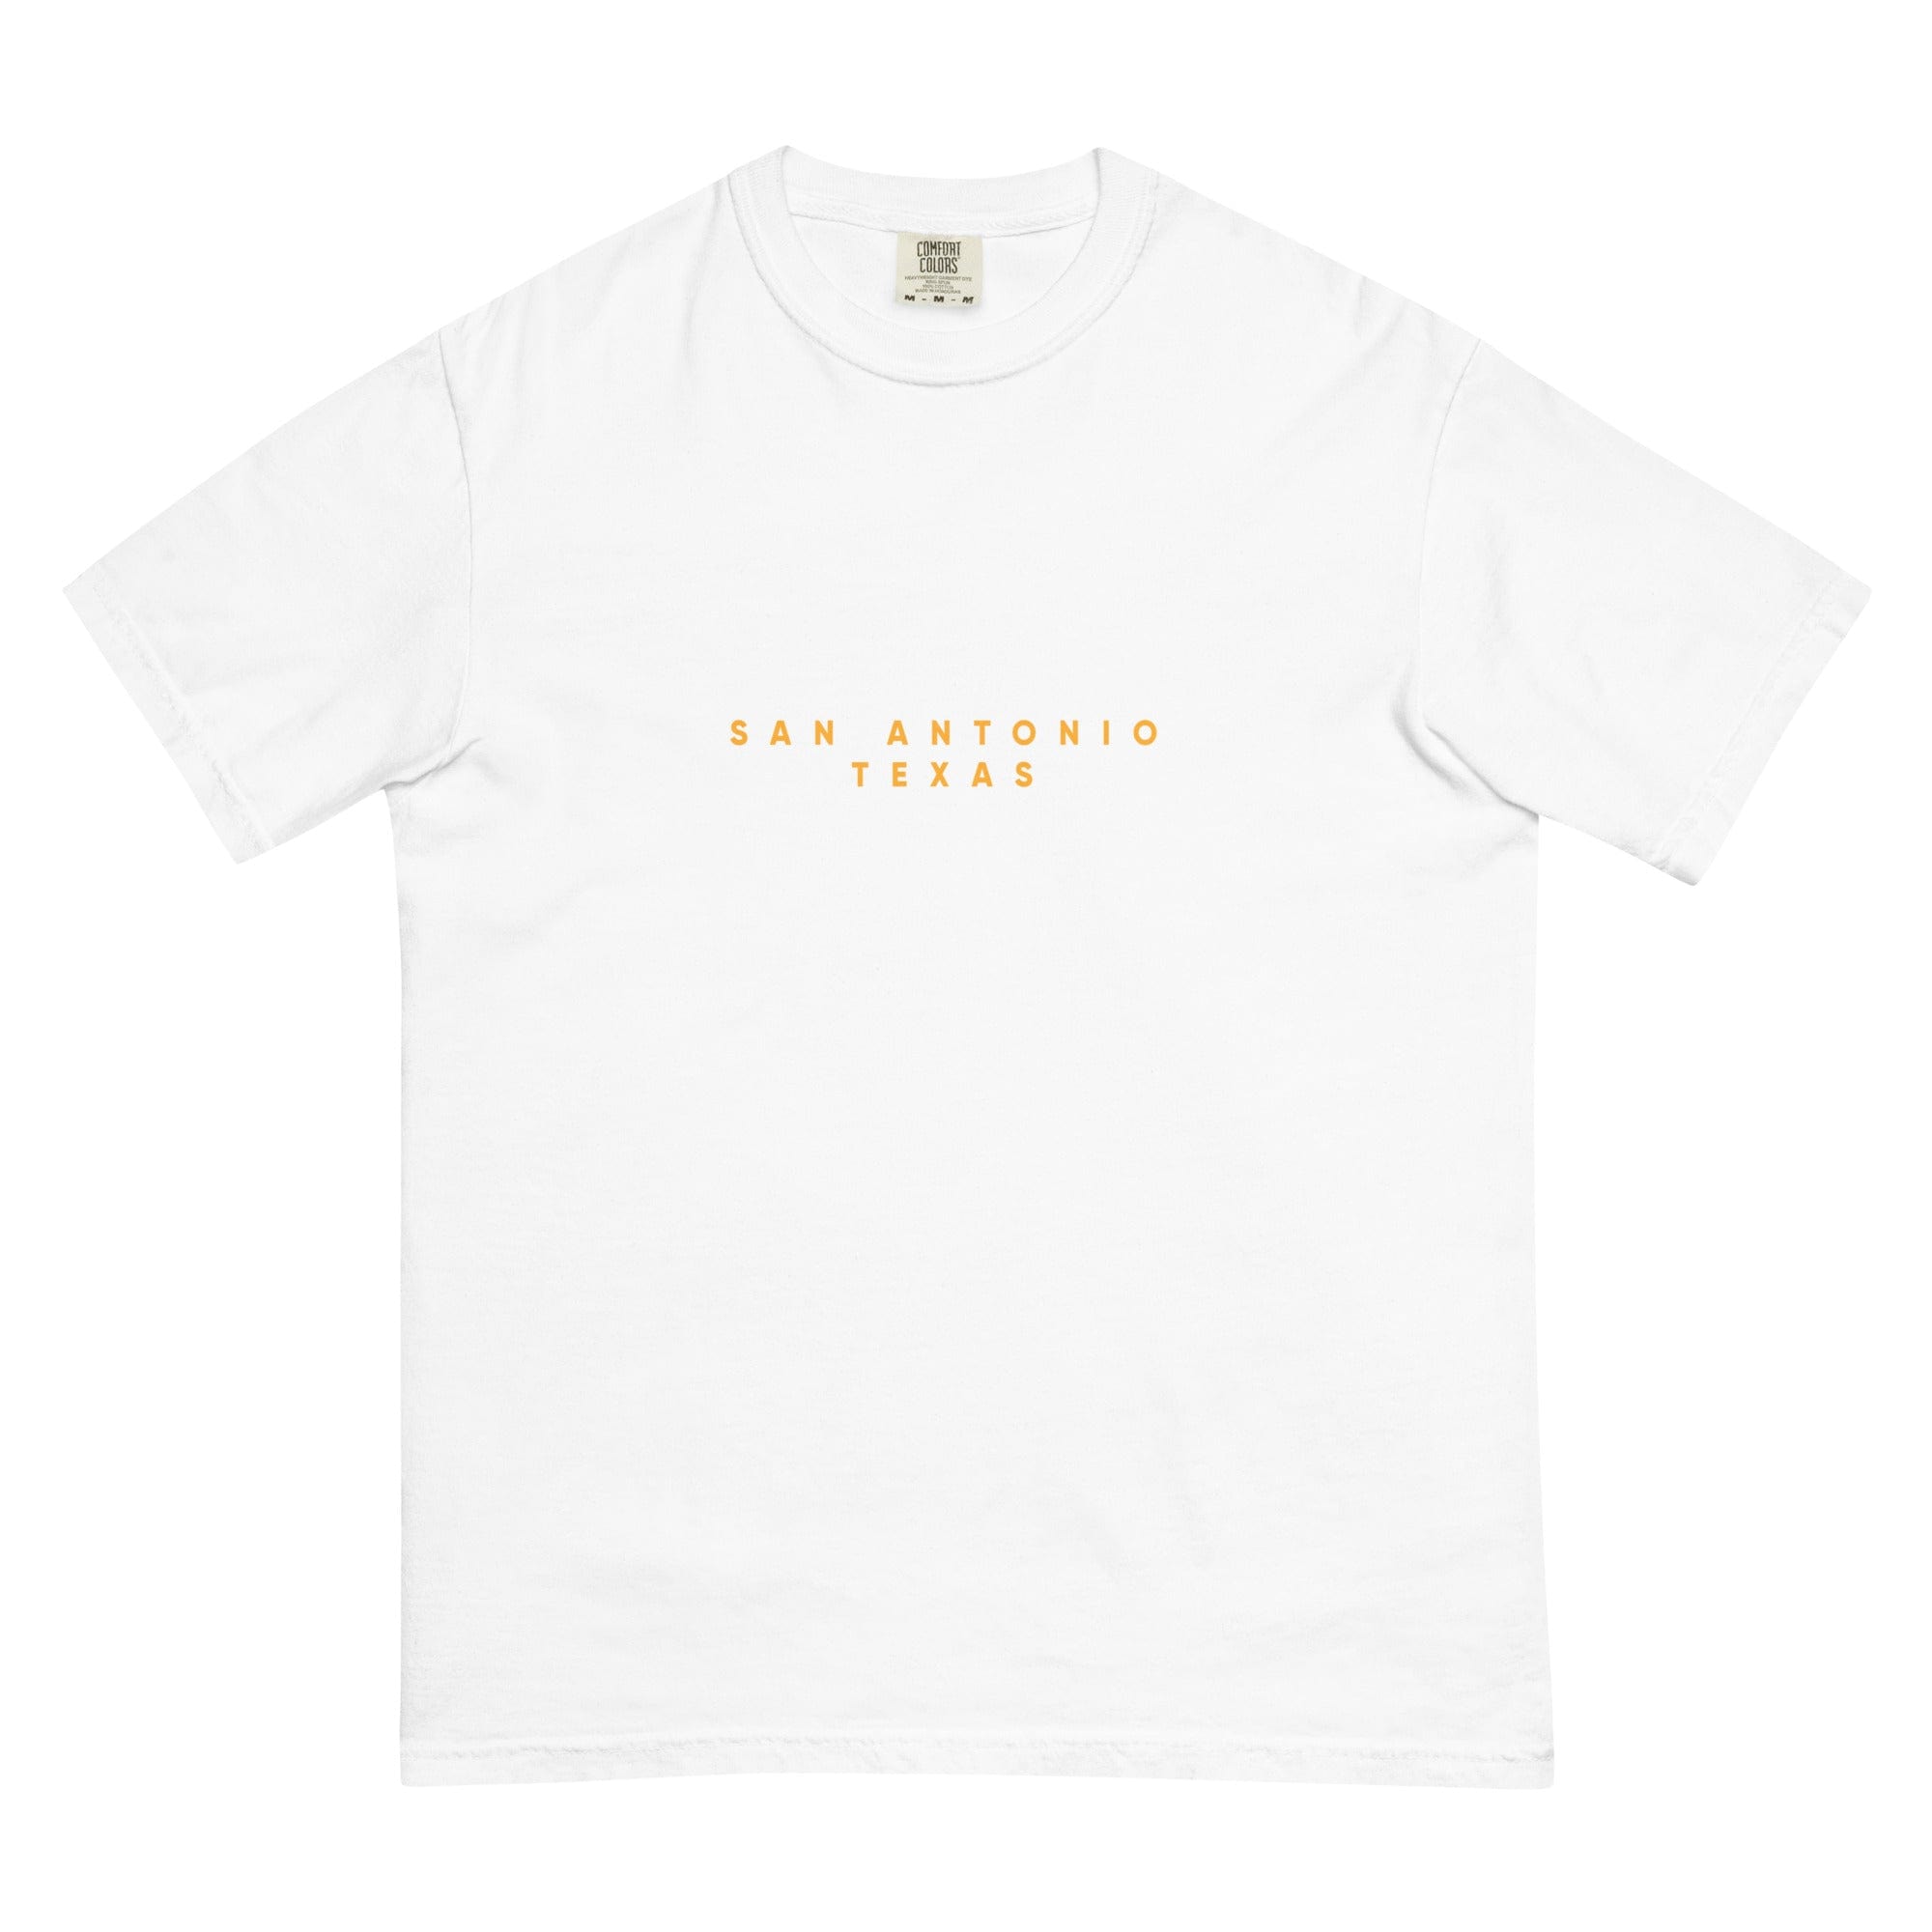 City Shirt Co San Antonio Comfort Colors T-Shirt White / S